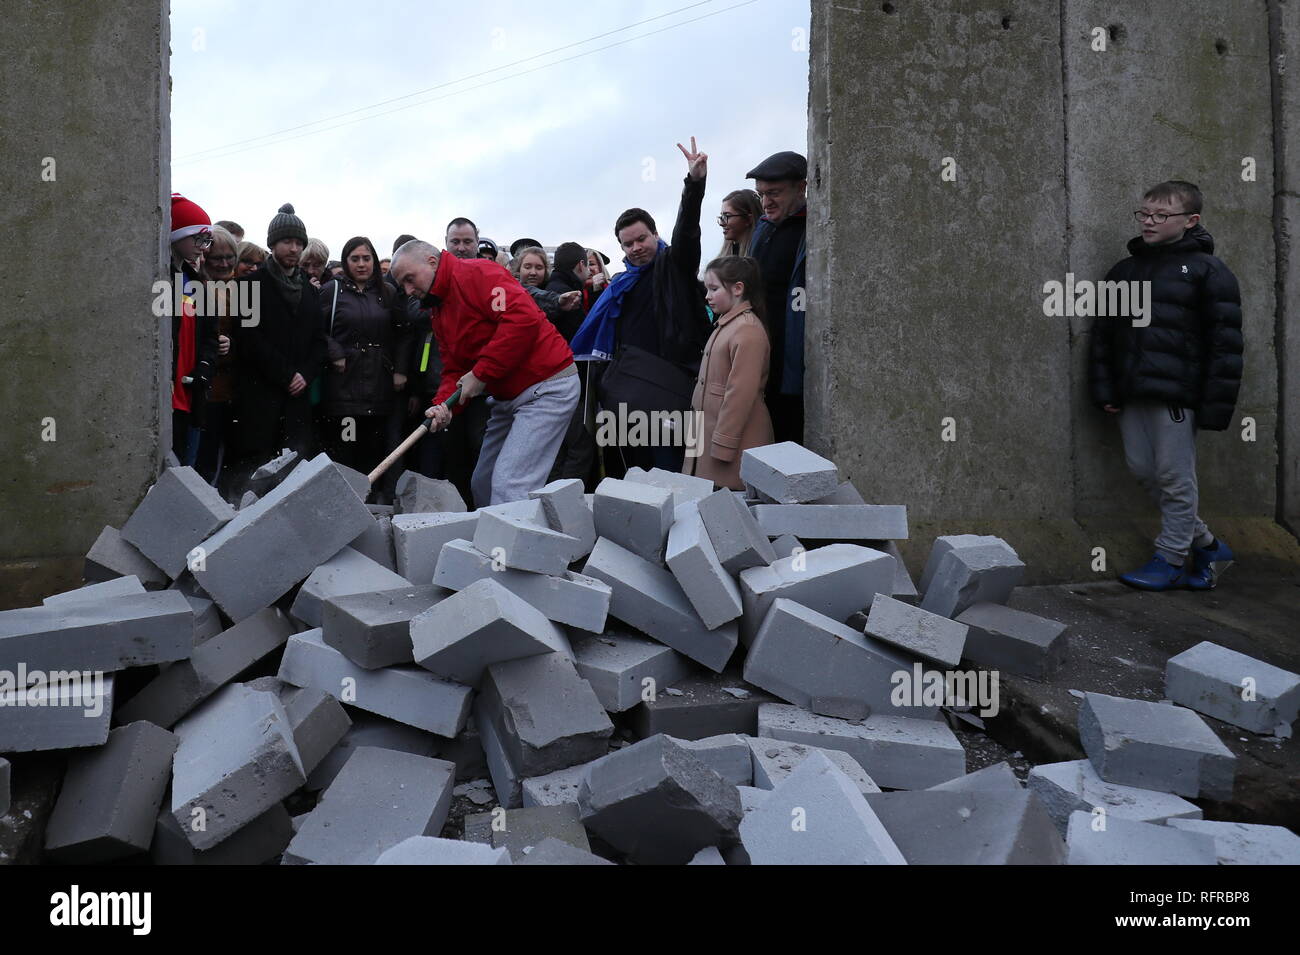 Manifestanti abbattere un muro simbolico che fu costruita come parte di un anti-Brexit al rally di frontiera irlandese vicino Carrickcarnan, Co Louth. Foto Stock